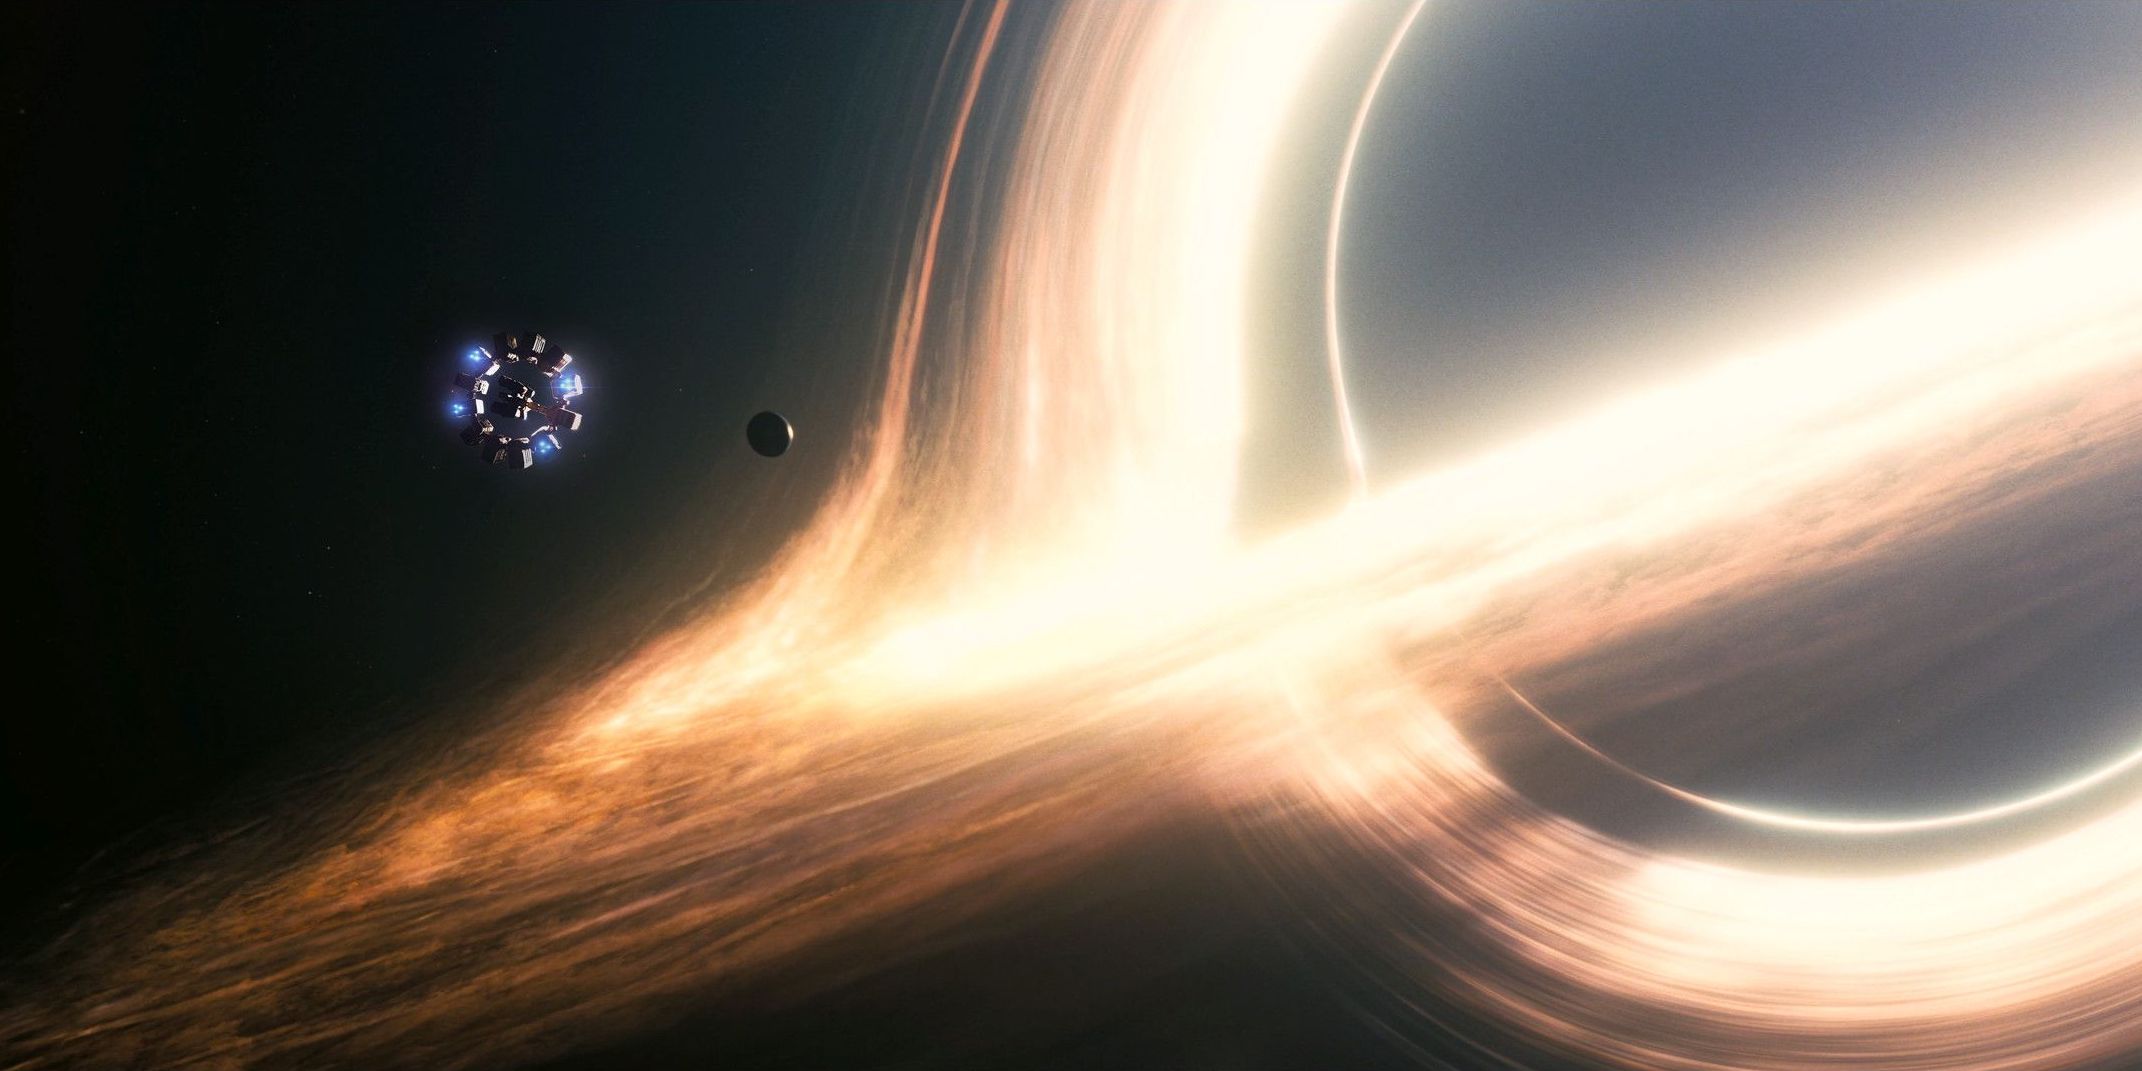 The Black Hole in Interstellar movie